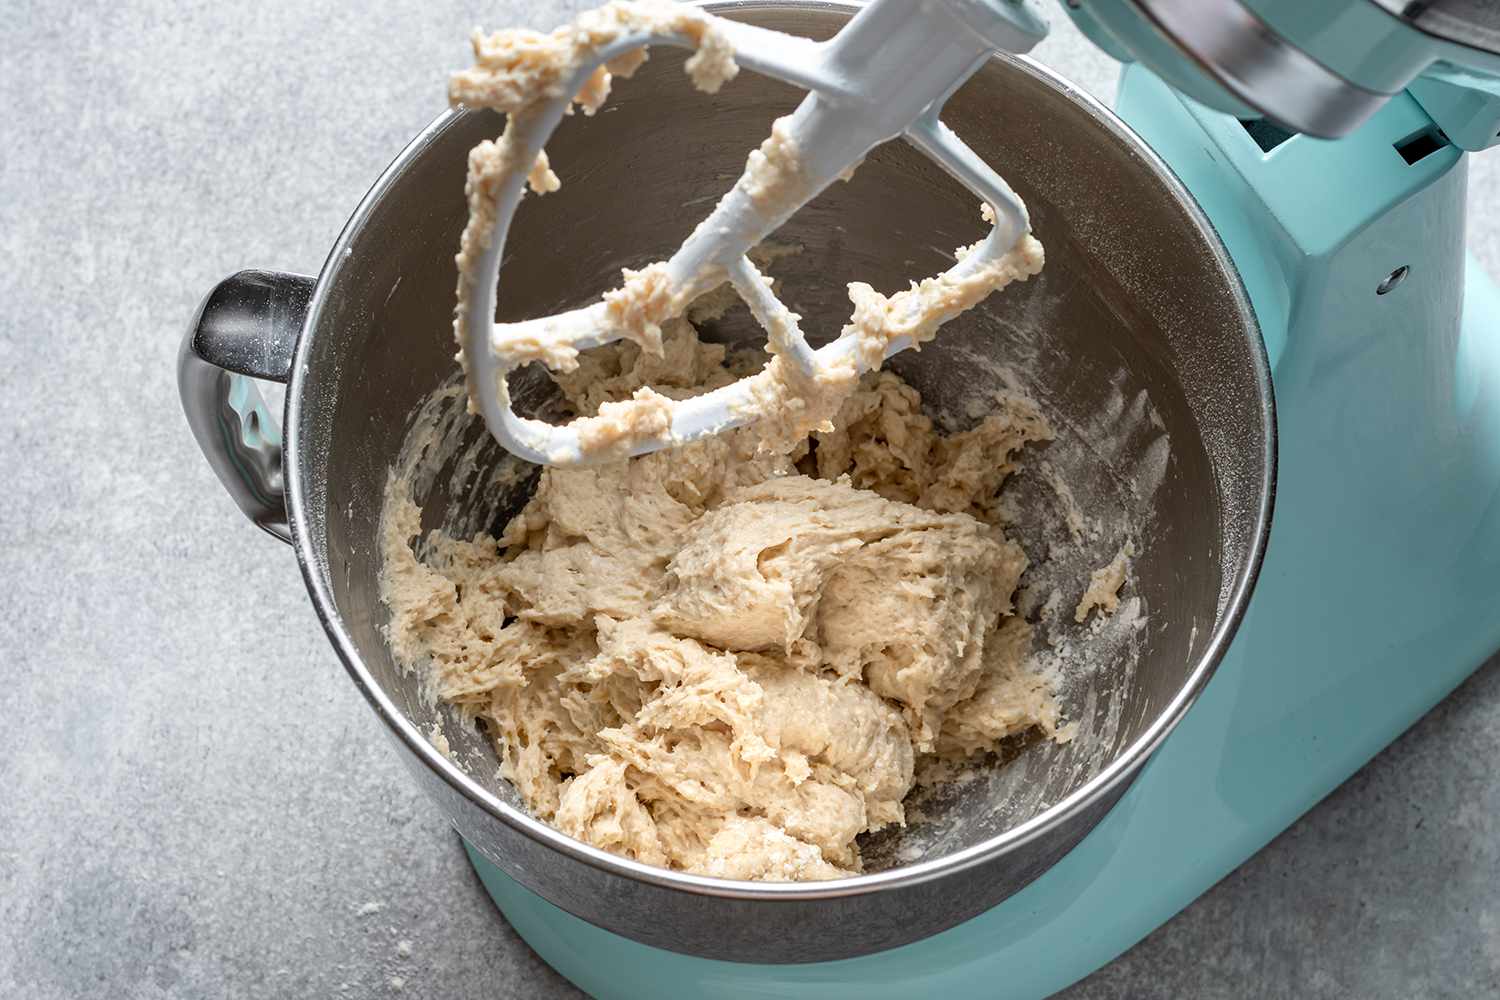 Stand mixer mixing dough